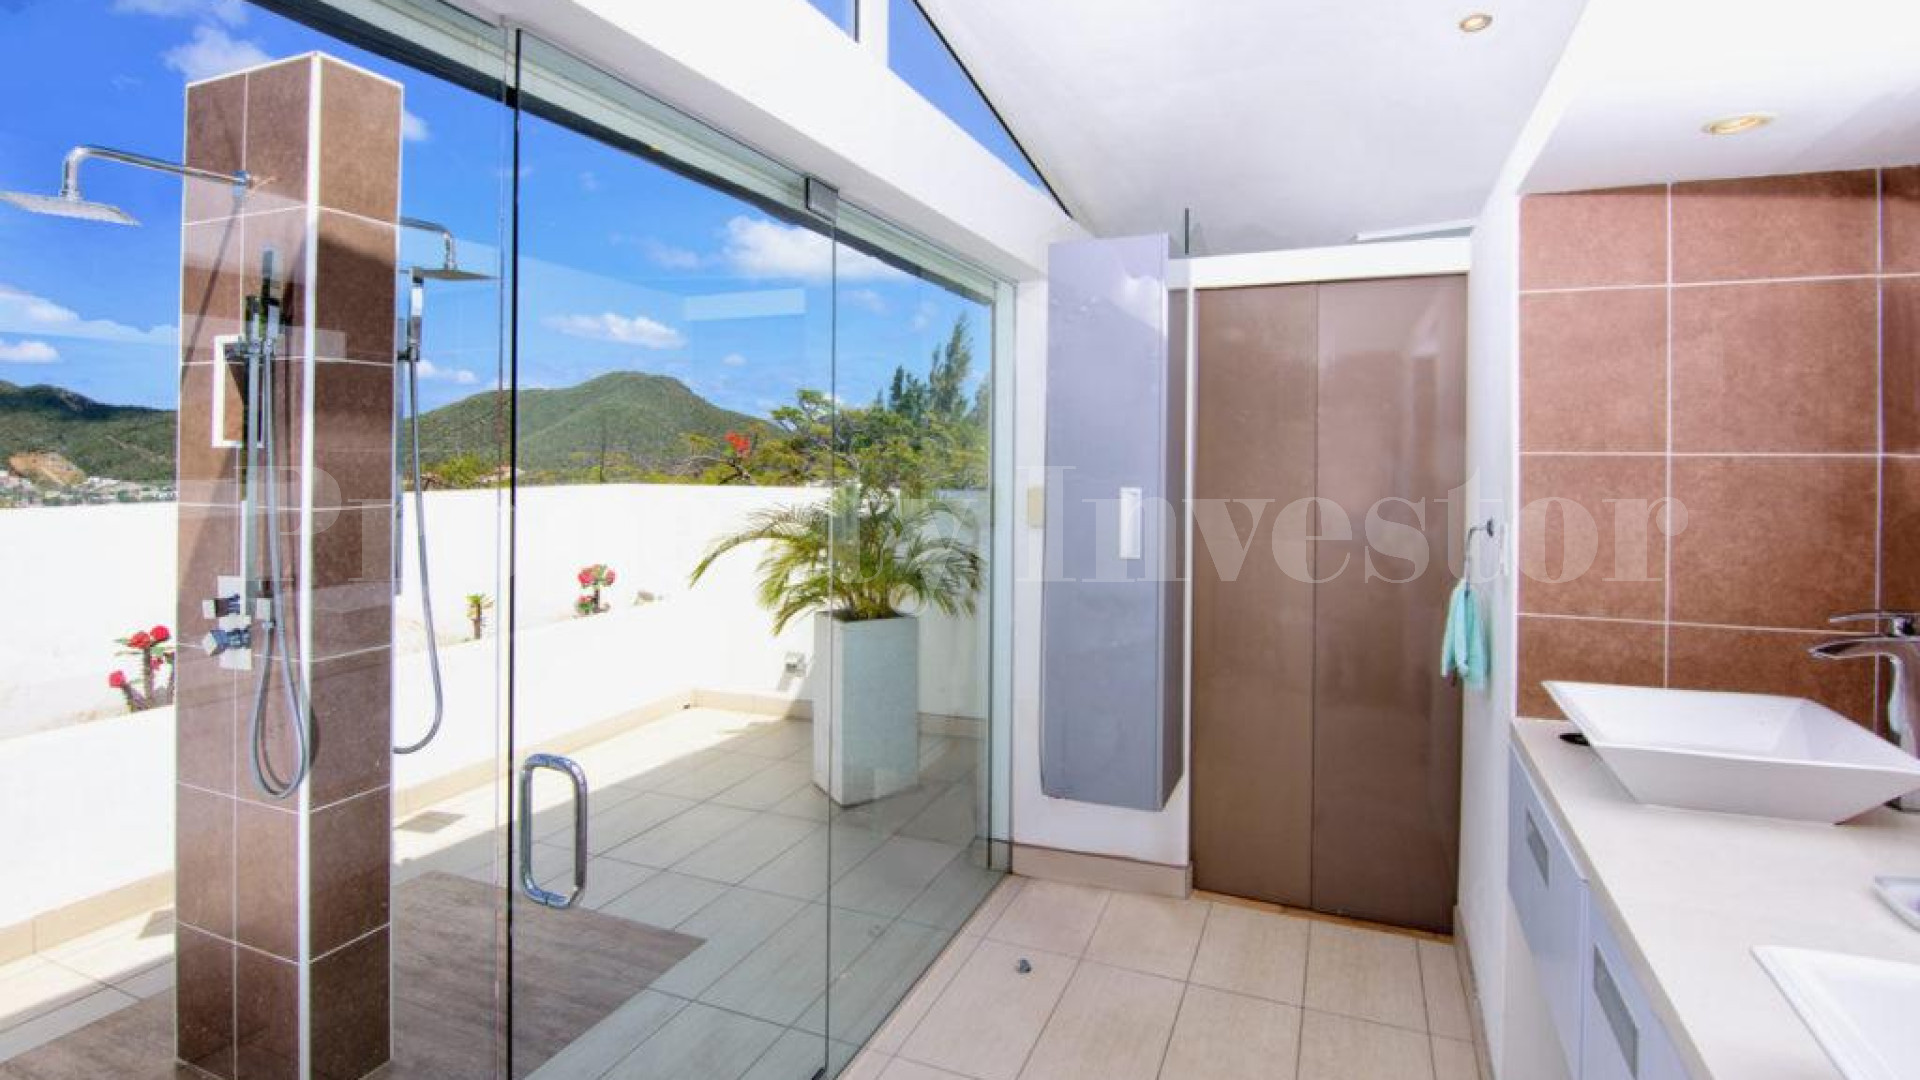 Stunning One-of-a-Kind 5 Bedroom Oceanview Luxury Villa for Sale in Pelican Key, St. Maarten